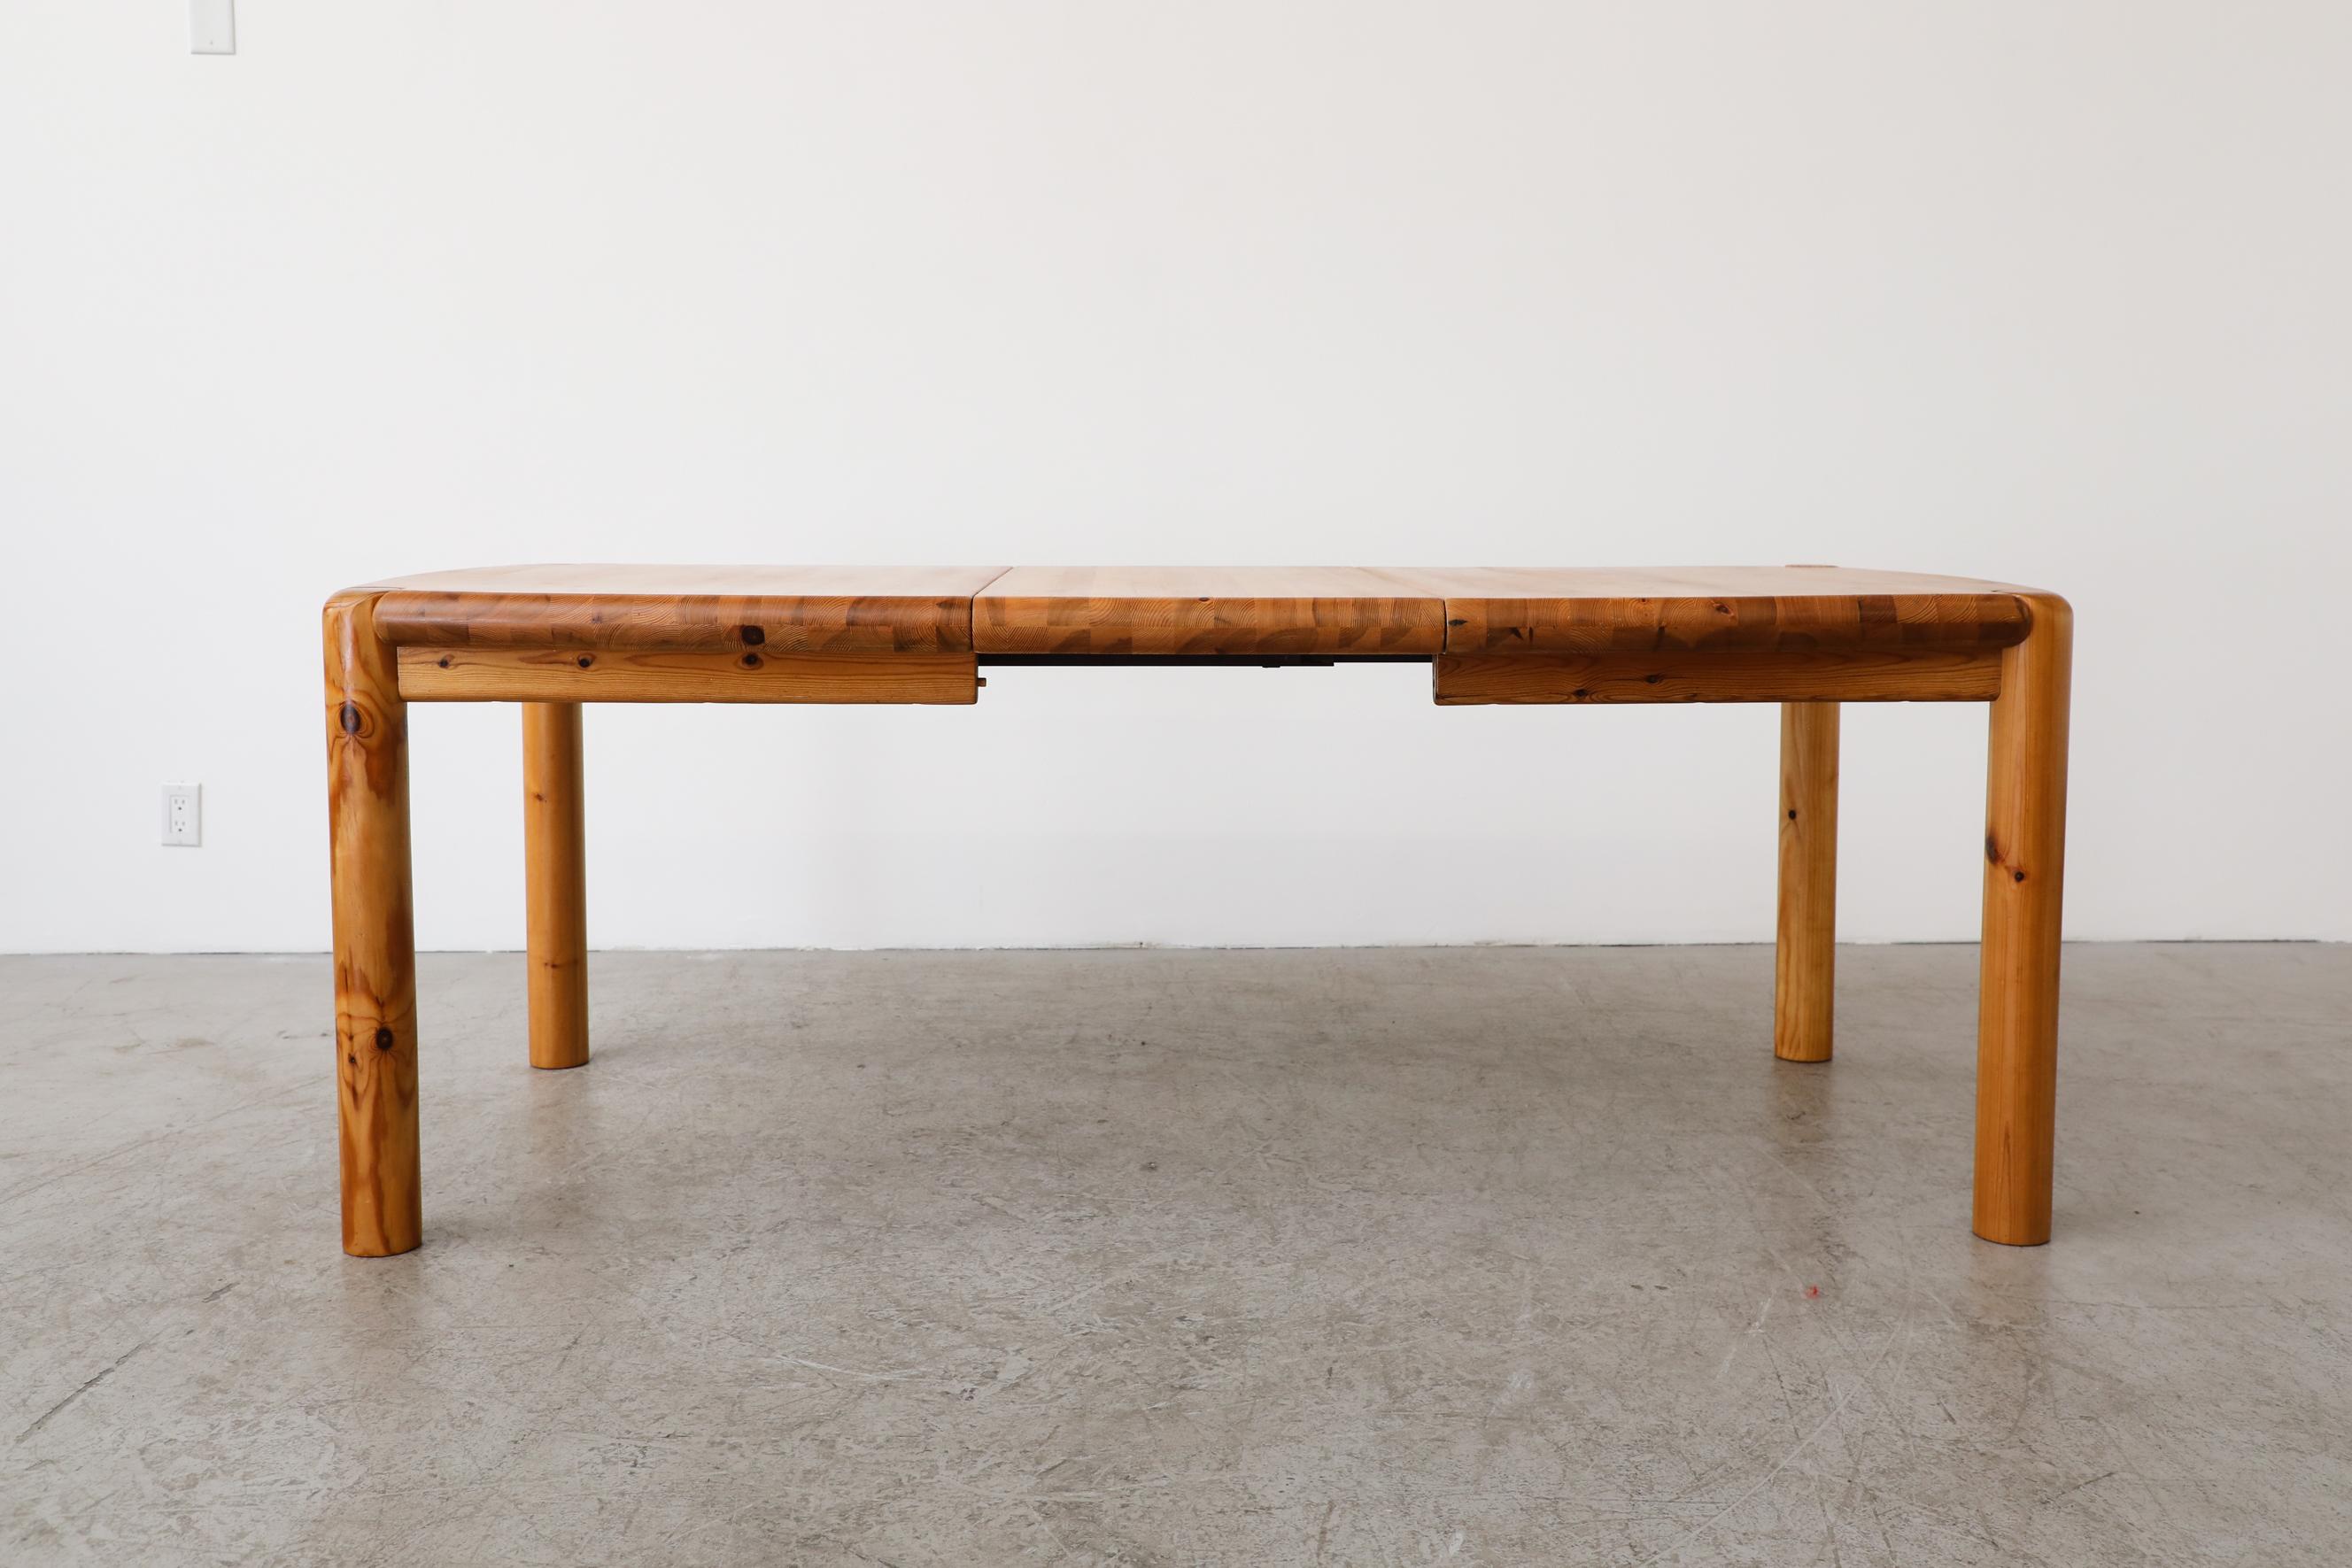 Table de salle à manger en pin avec une feuille par Rainer Daumiller pour Hirtshals Savvaerk, Danemark. En état d'origine avec quelques légères marques d'usure, conformes à son âge et à son utilisation. La table mesure 78,75